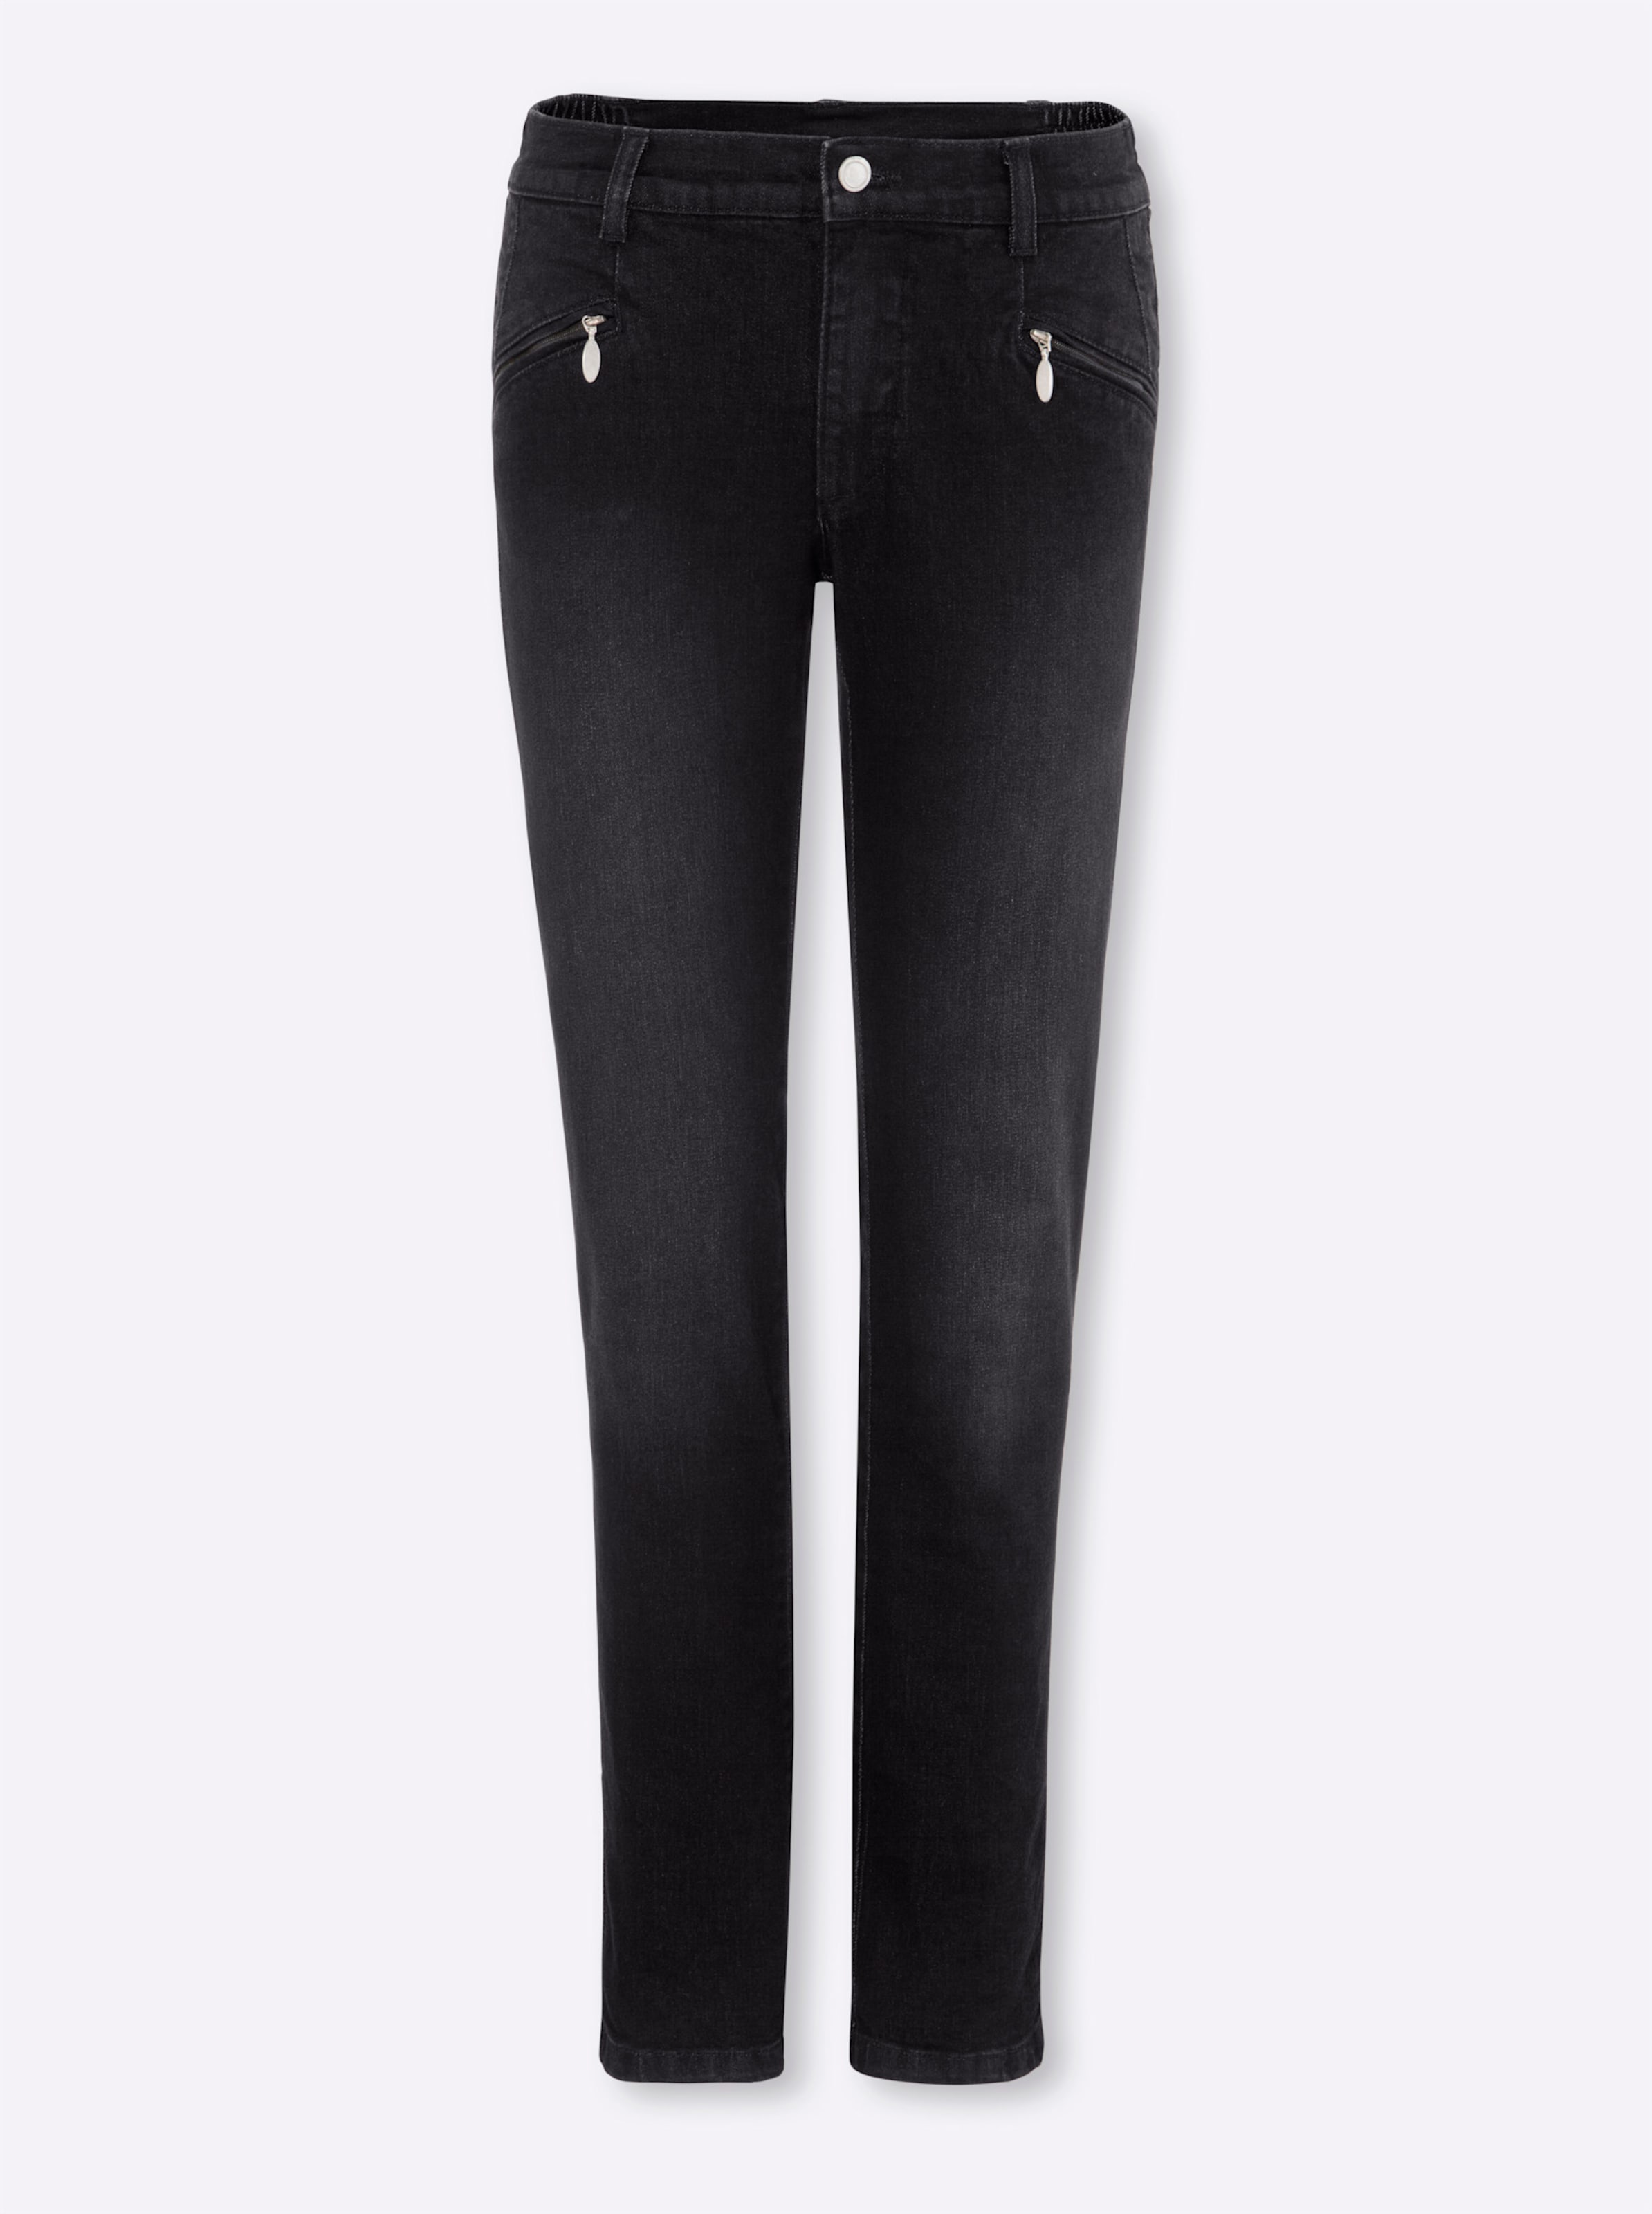 Witt Weiden Damen Jeans black denim  - Onlineshop Witt Weiden